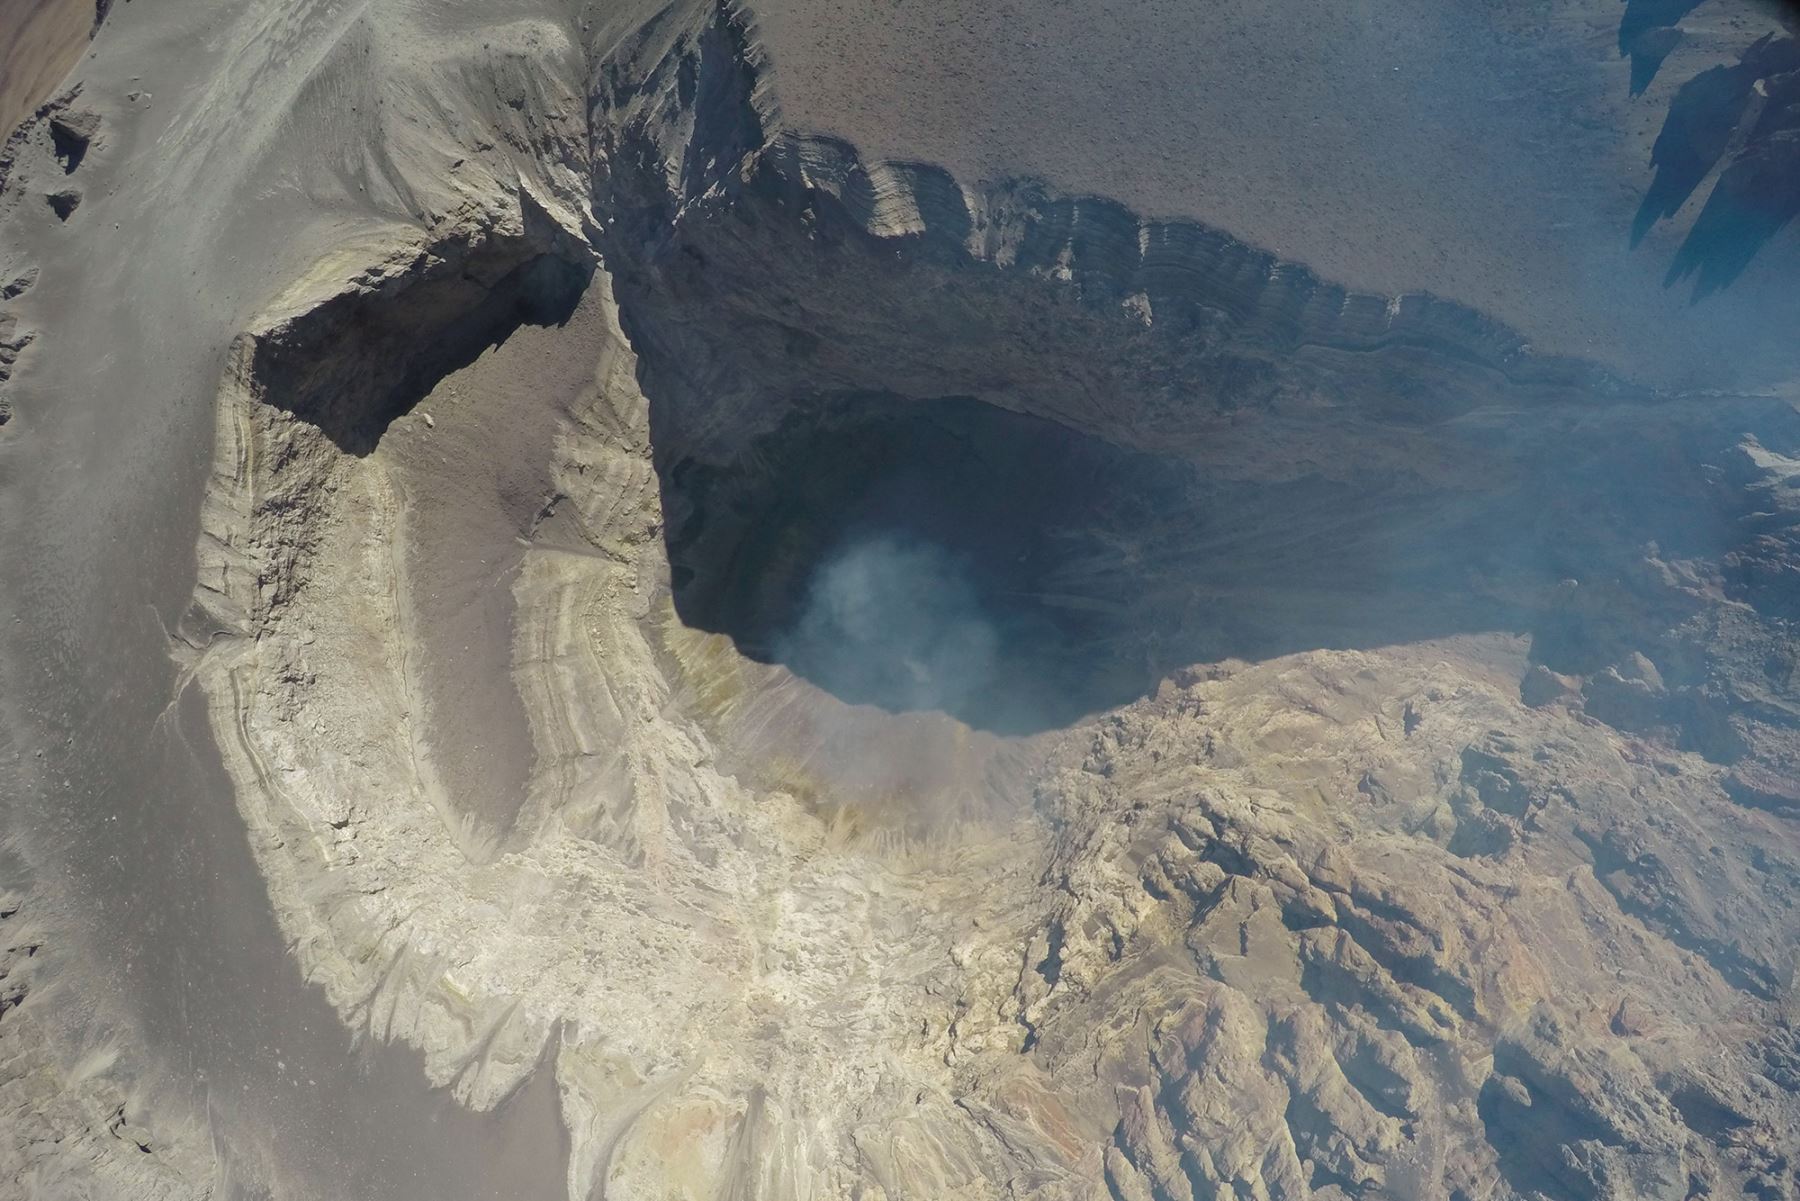 Con dron desarrollado por el Instituto Geofísico del Perú se captó esta imagen del cráter del volcán Ubinas, región Moquegua.